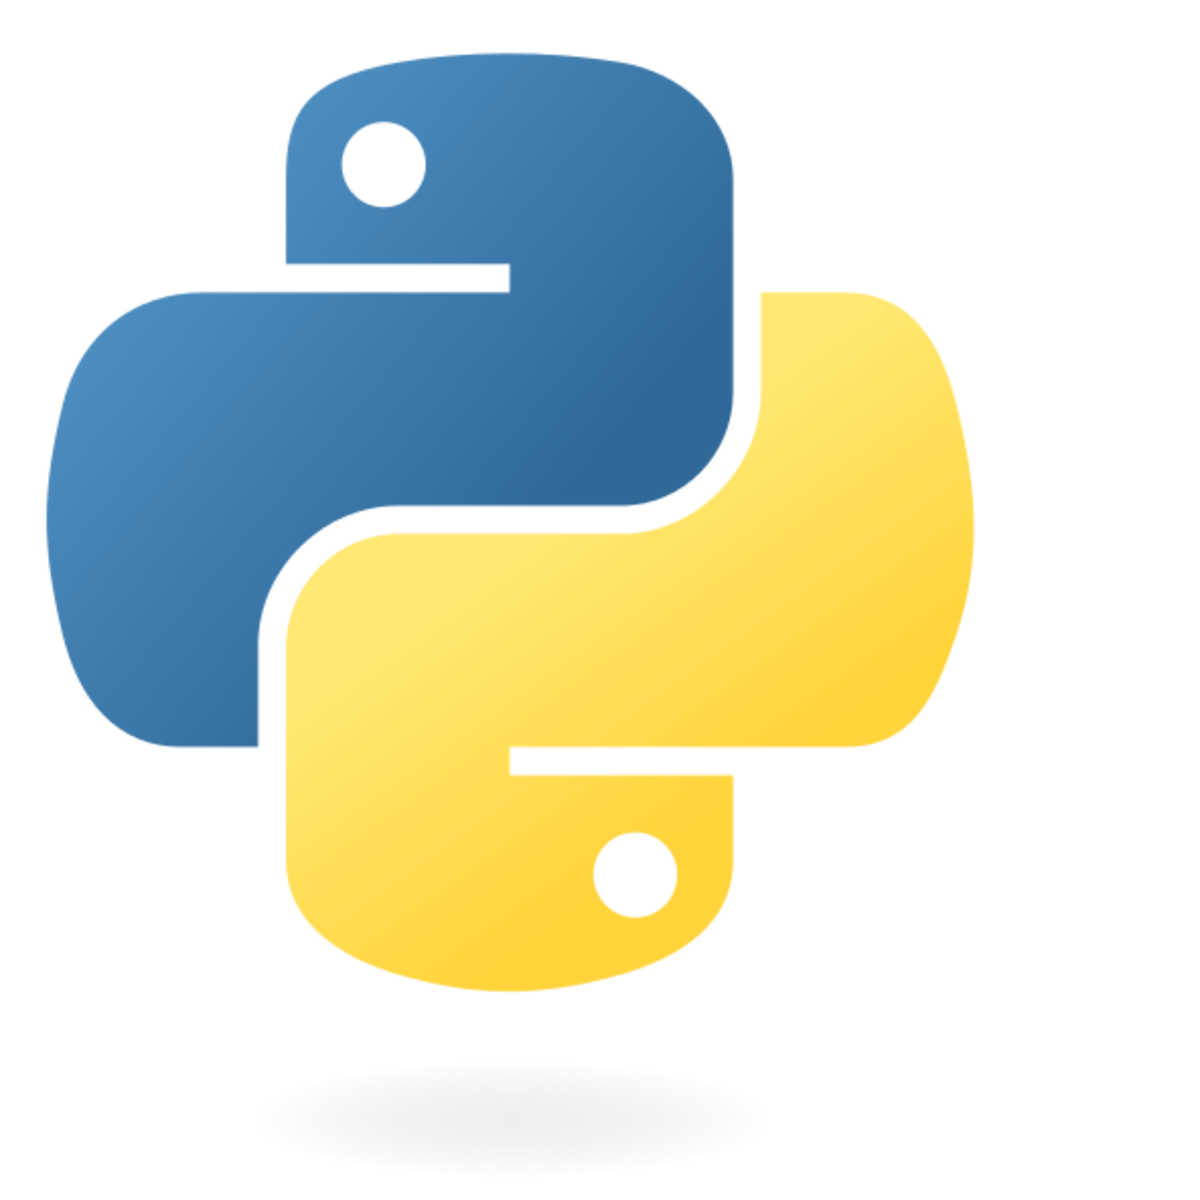 Flat python. Значок Python. Питон логотип. Питон программирование логотип. Idle Python иконка.